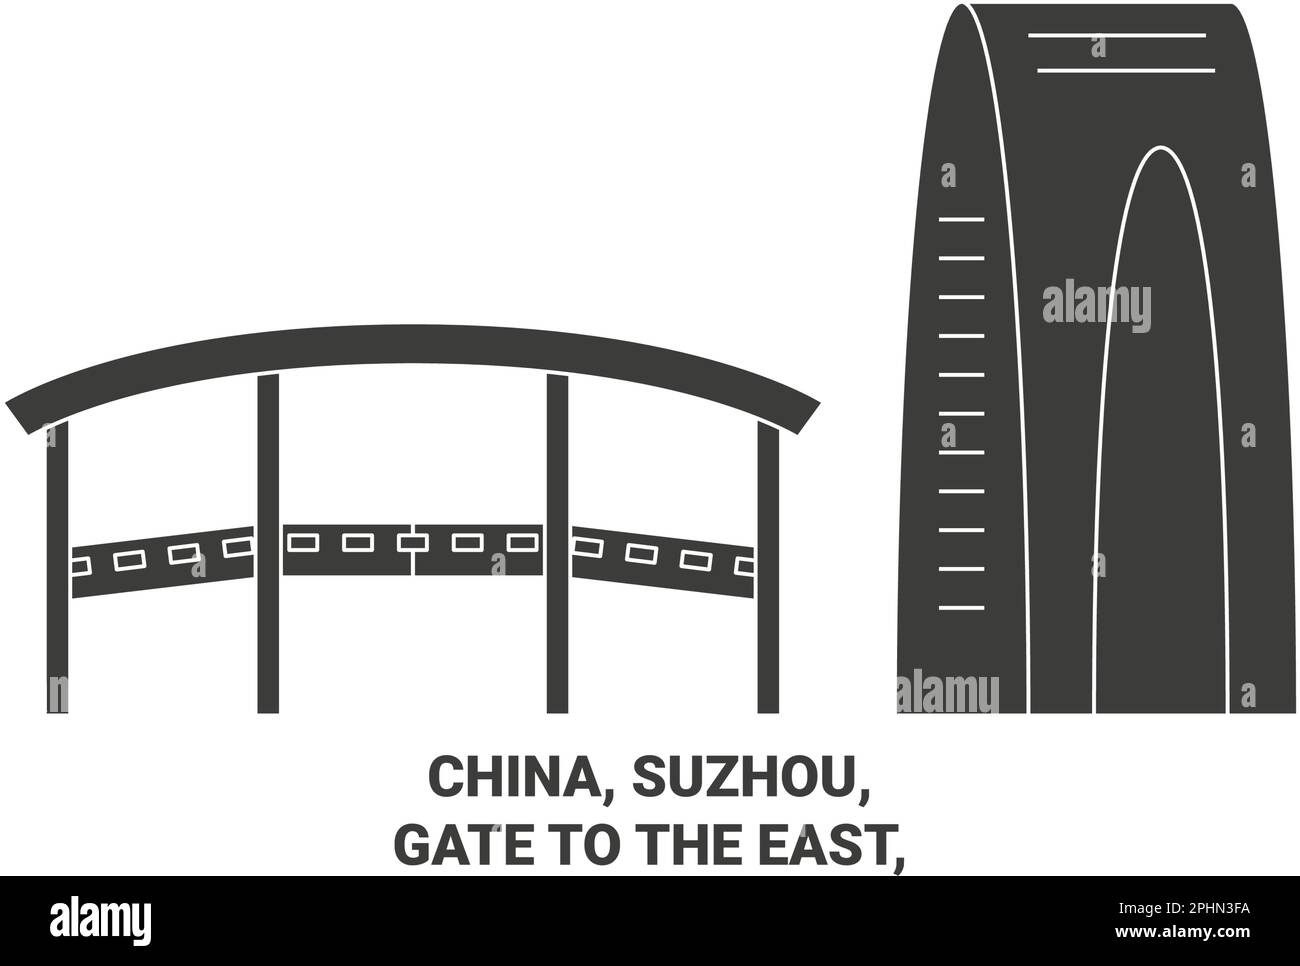 China, Suzhou, puerta al este, ilustración vectorial de hito de viaje Ilustración del Vector